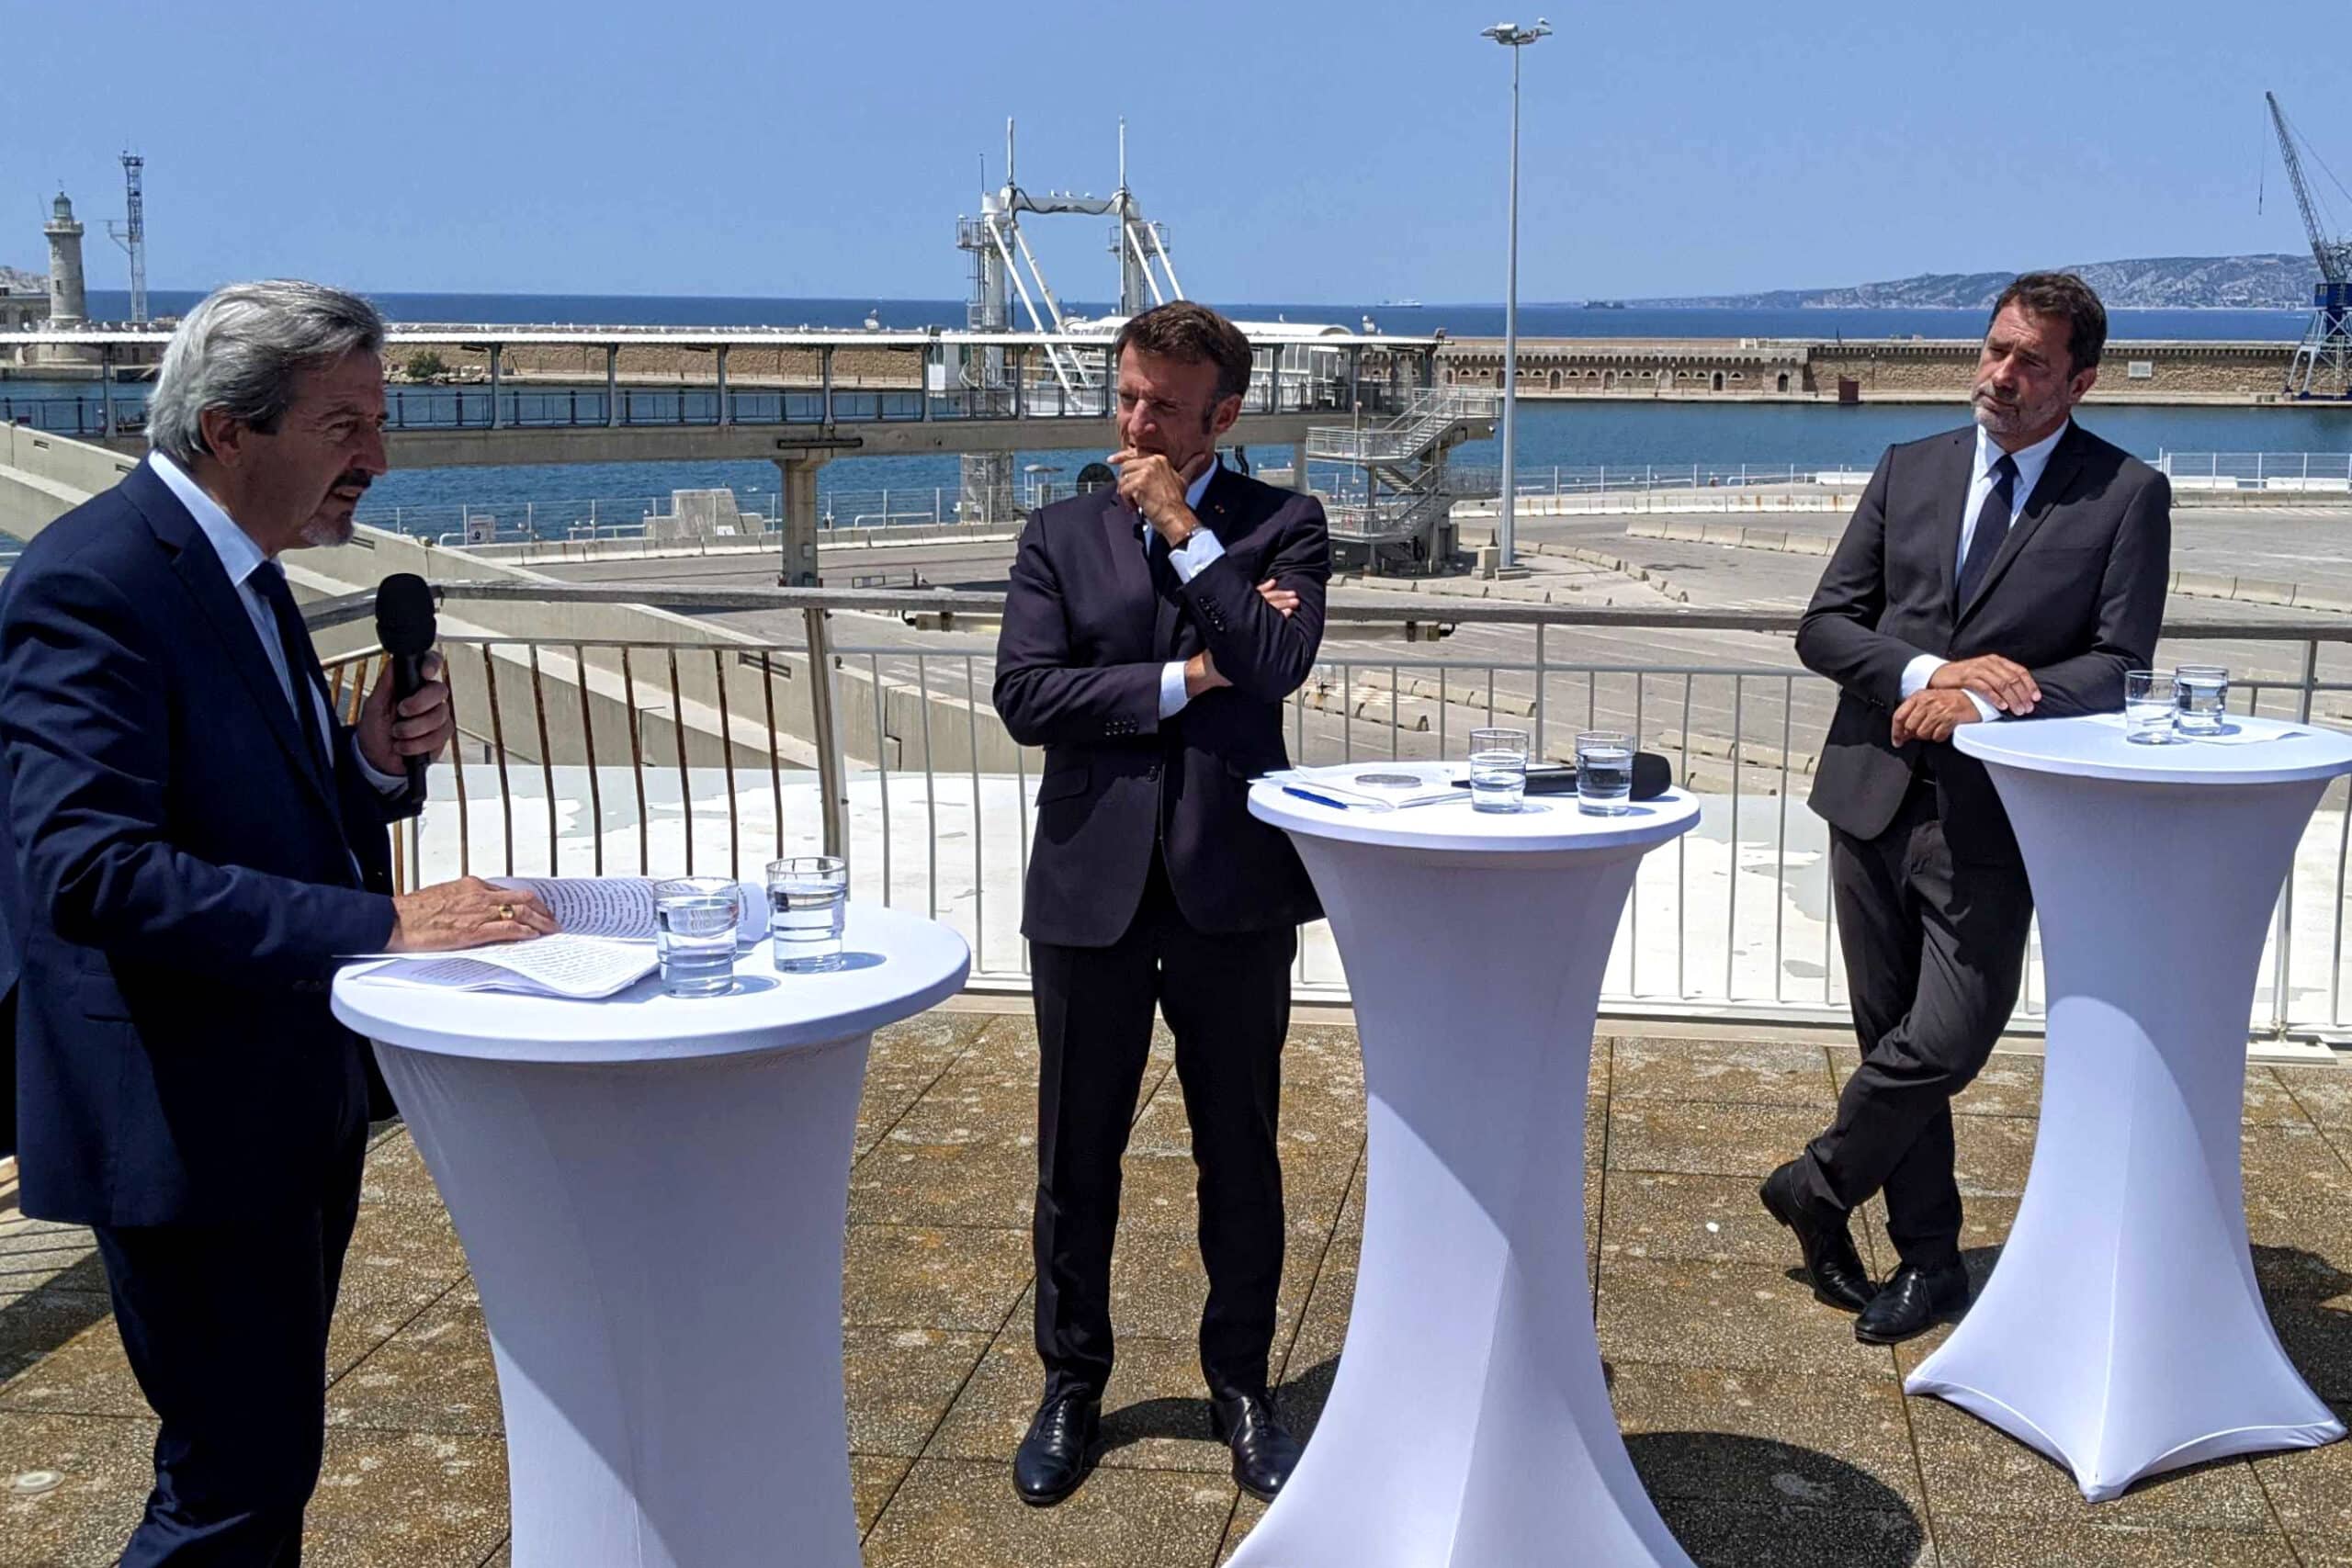 nucléaires, Emmanuel Macron évoque l’ouverture de centrales nucléaires sur Marseille-Fos, Made in Marseille